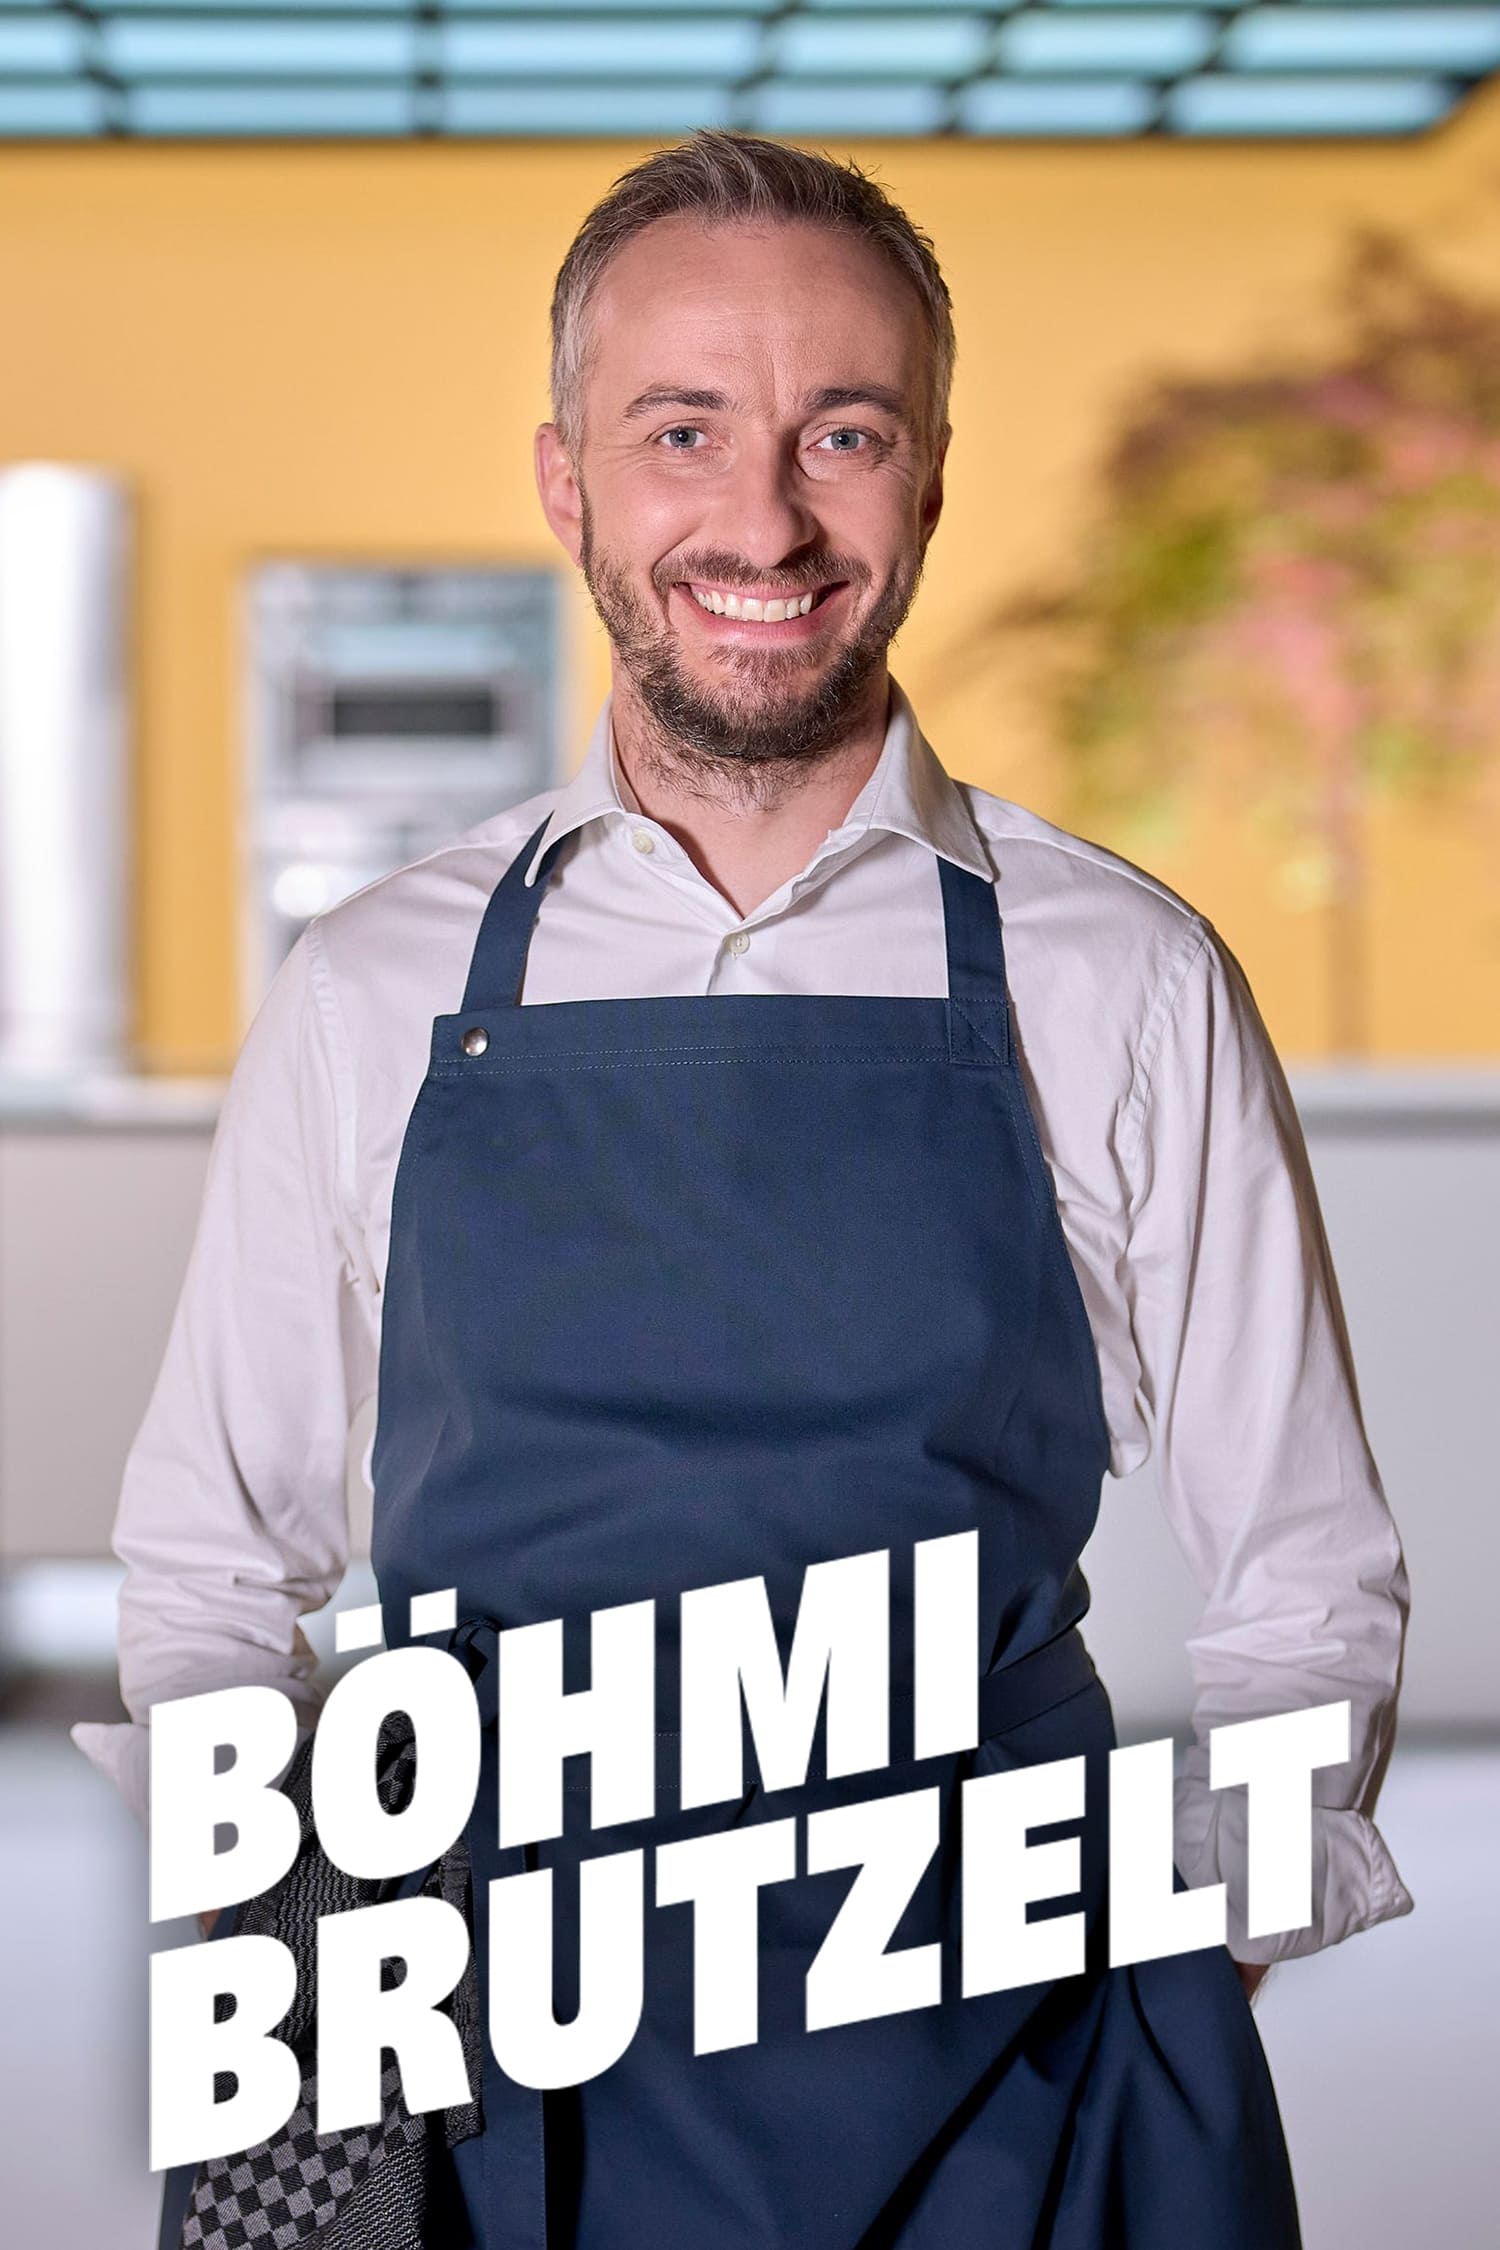 Böhmi brutzelt TV Shows About Cooking